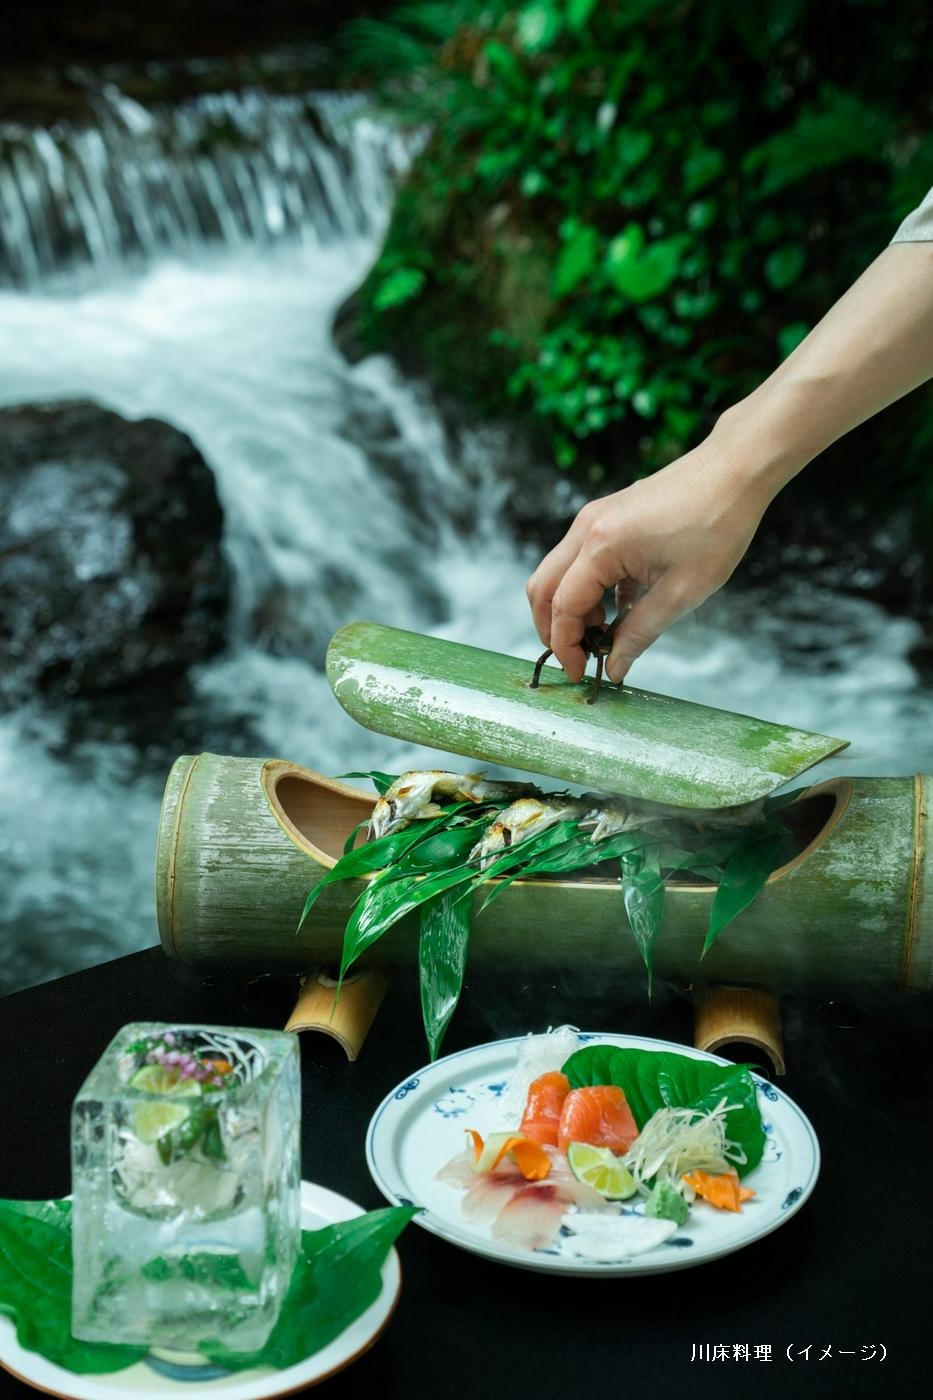 現役の料理人の方たちが日本料理の発展や京都の食文化の振興に貢献するための活動「京都料理芽生会」。